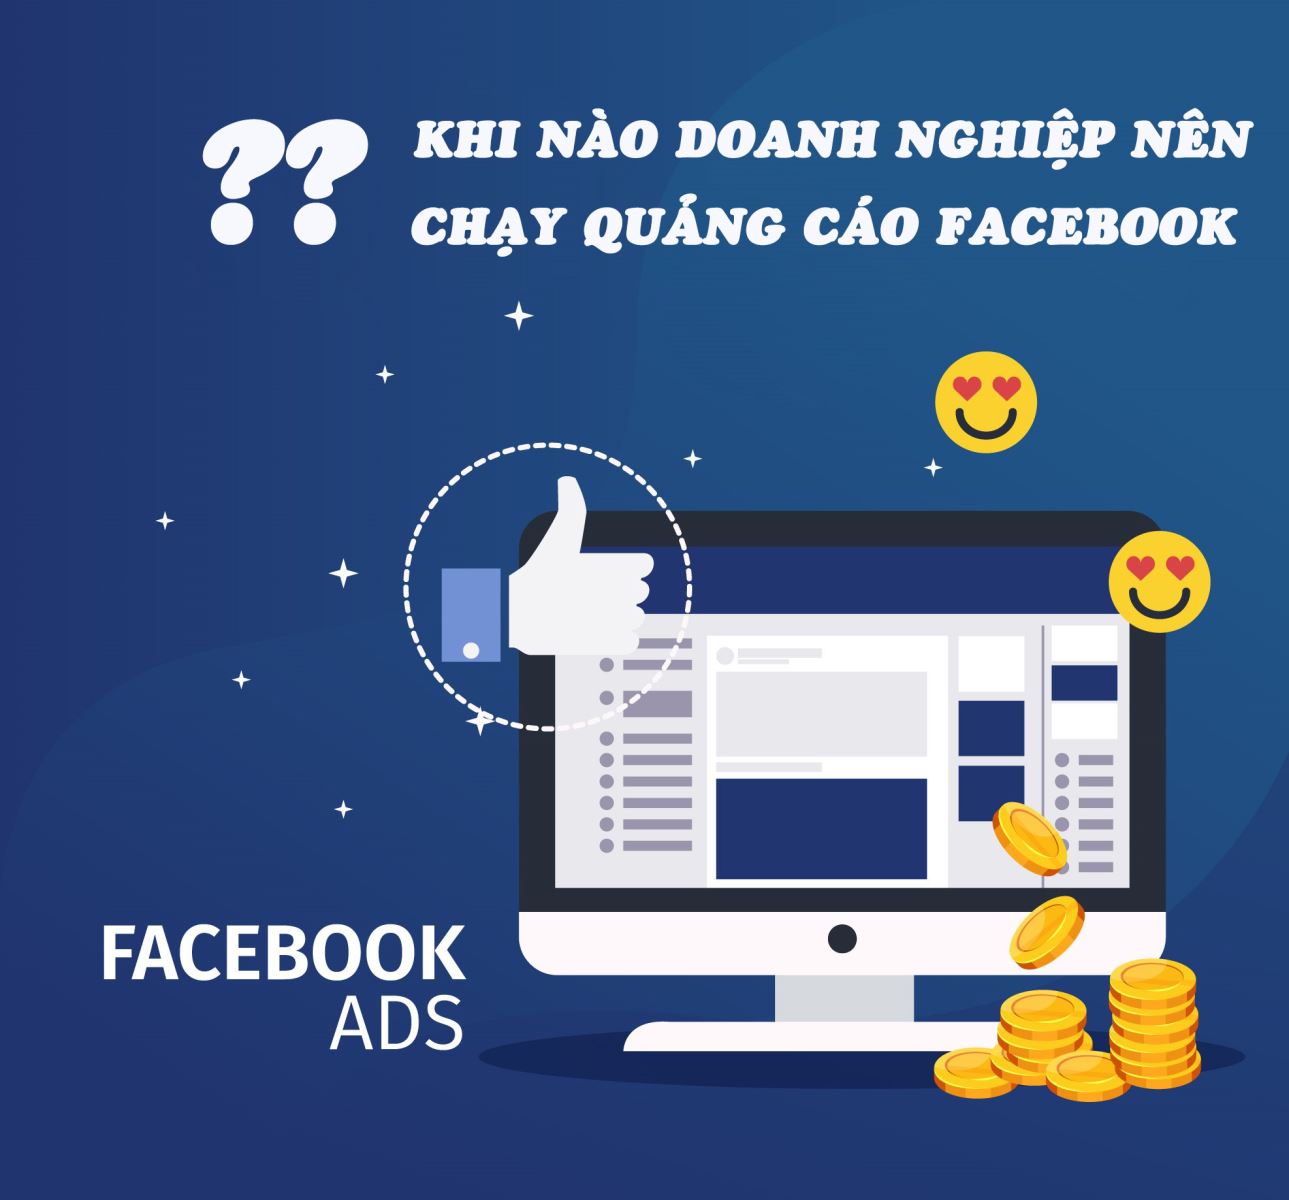 Khi nào doanh nghiệp nên chạy quảng cáo facebook để tăng doanh số?